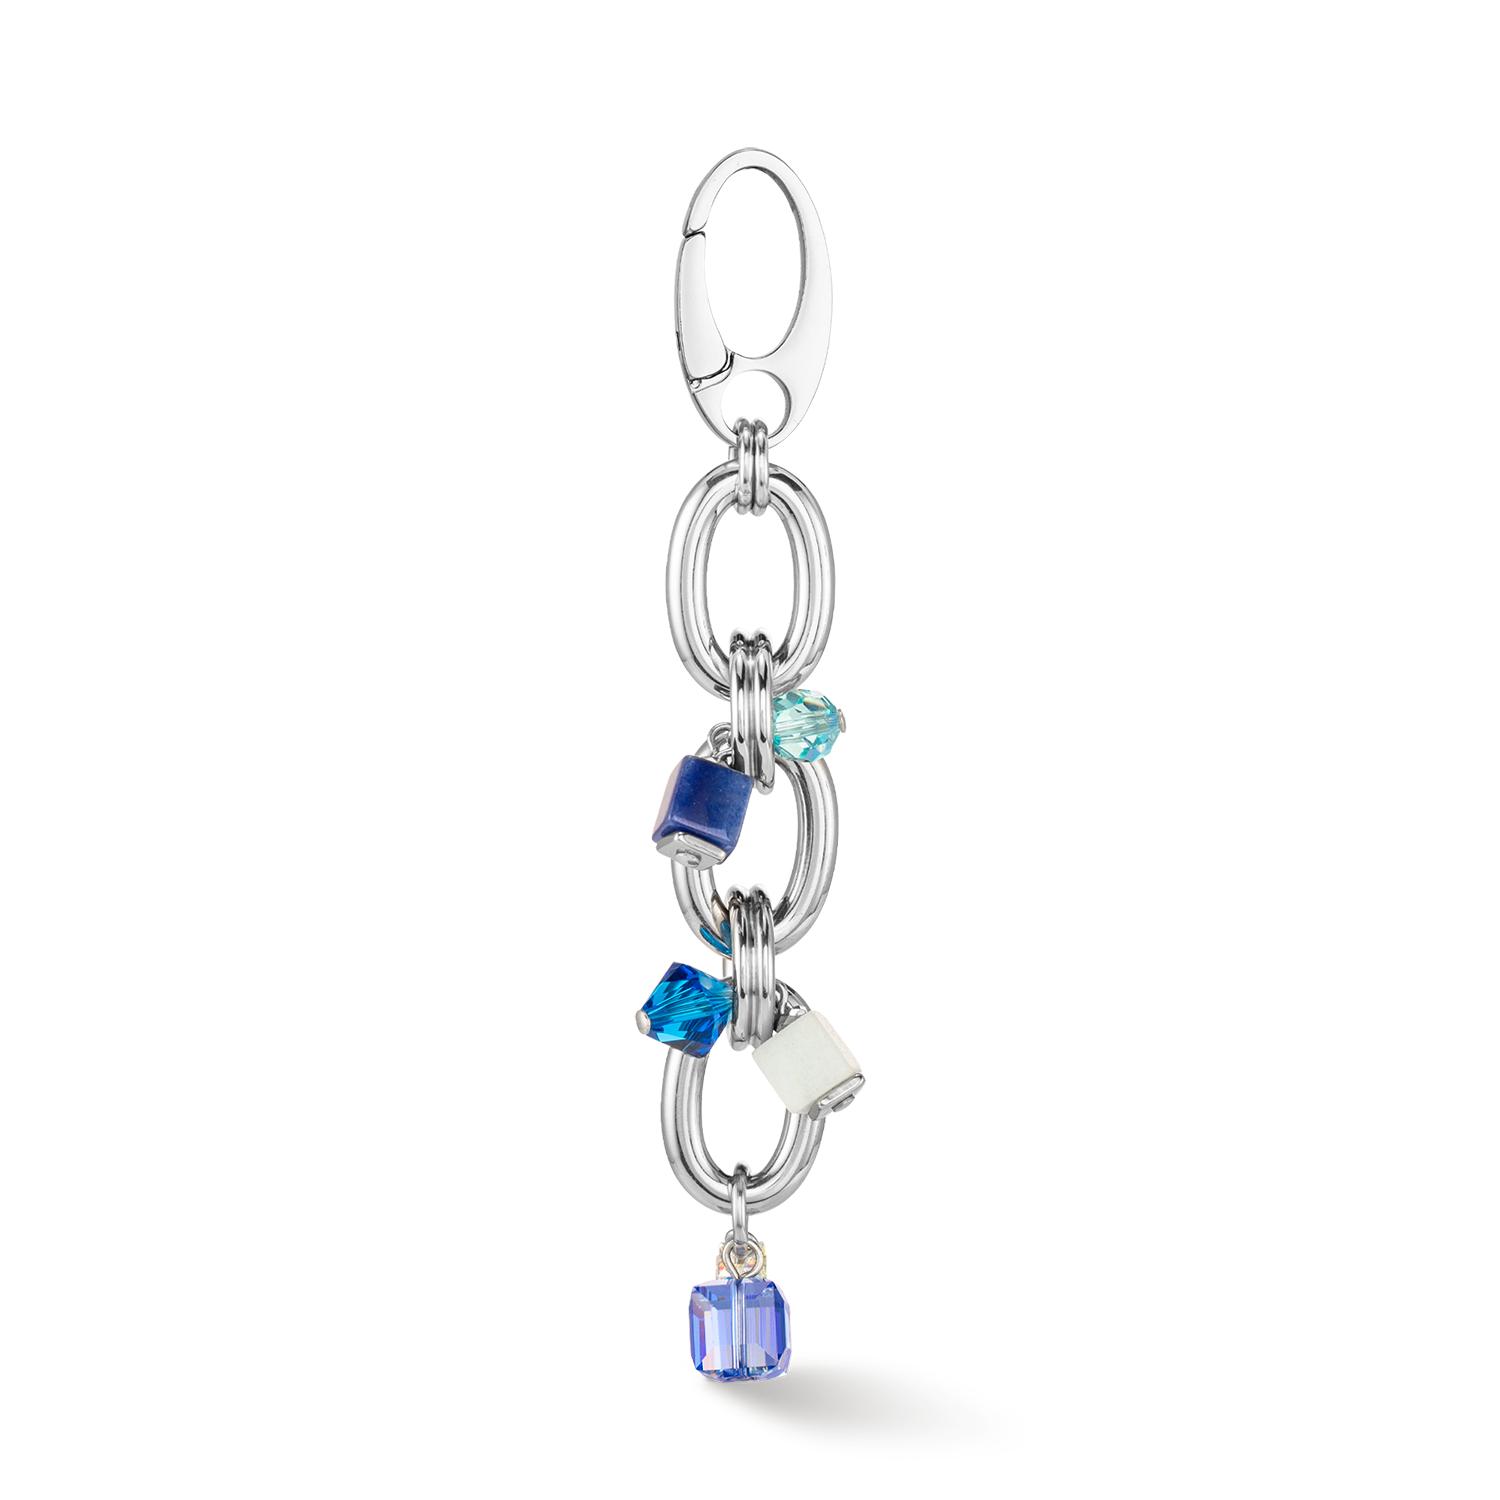 Neptune's Treasure necklace silver blue